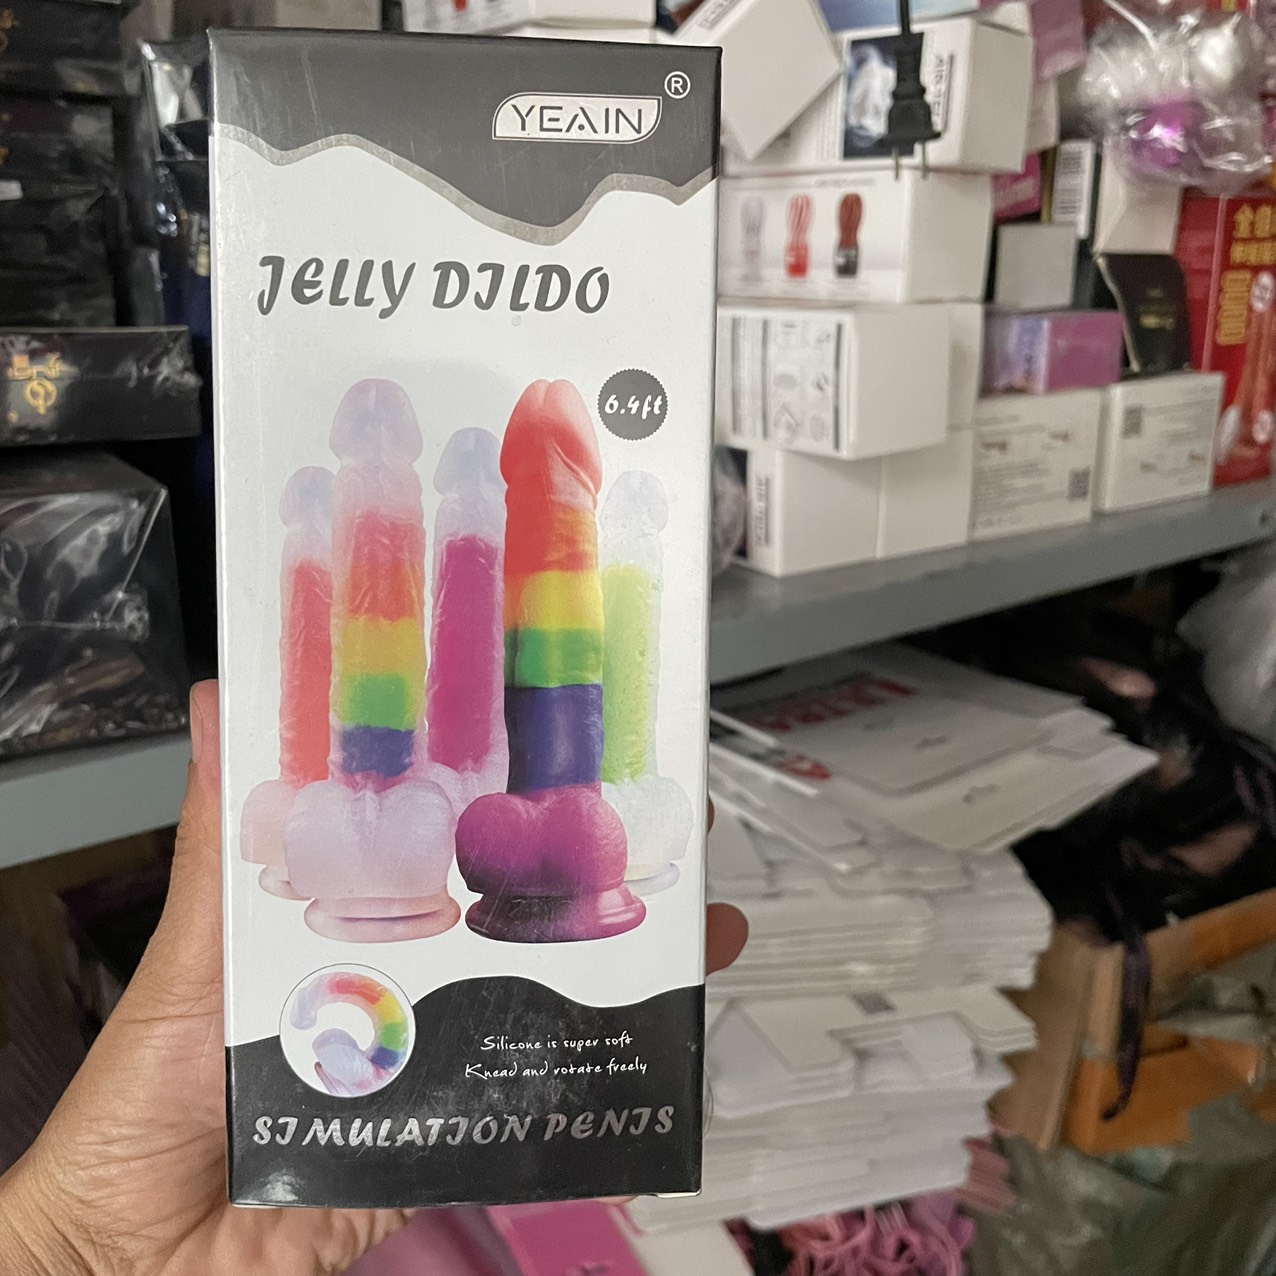 Duong-vat-gia-trong-suot-jelly didol